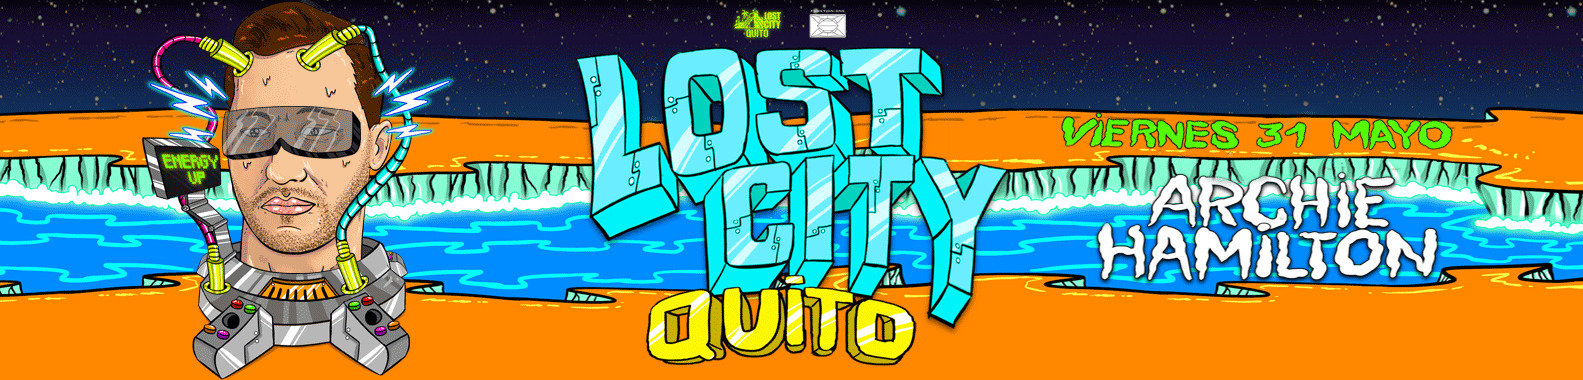 Lost City Party ft. Archie Hamilton (+18)